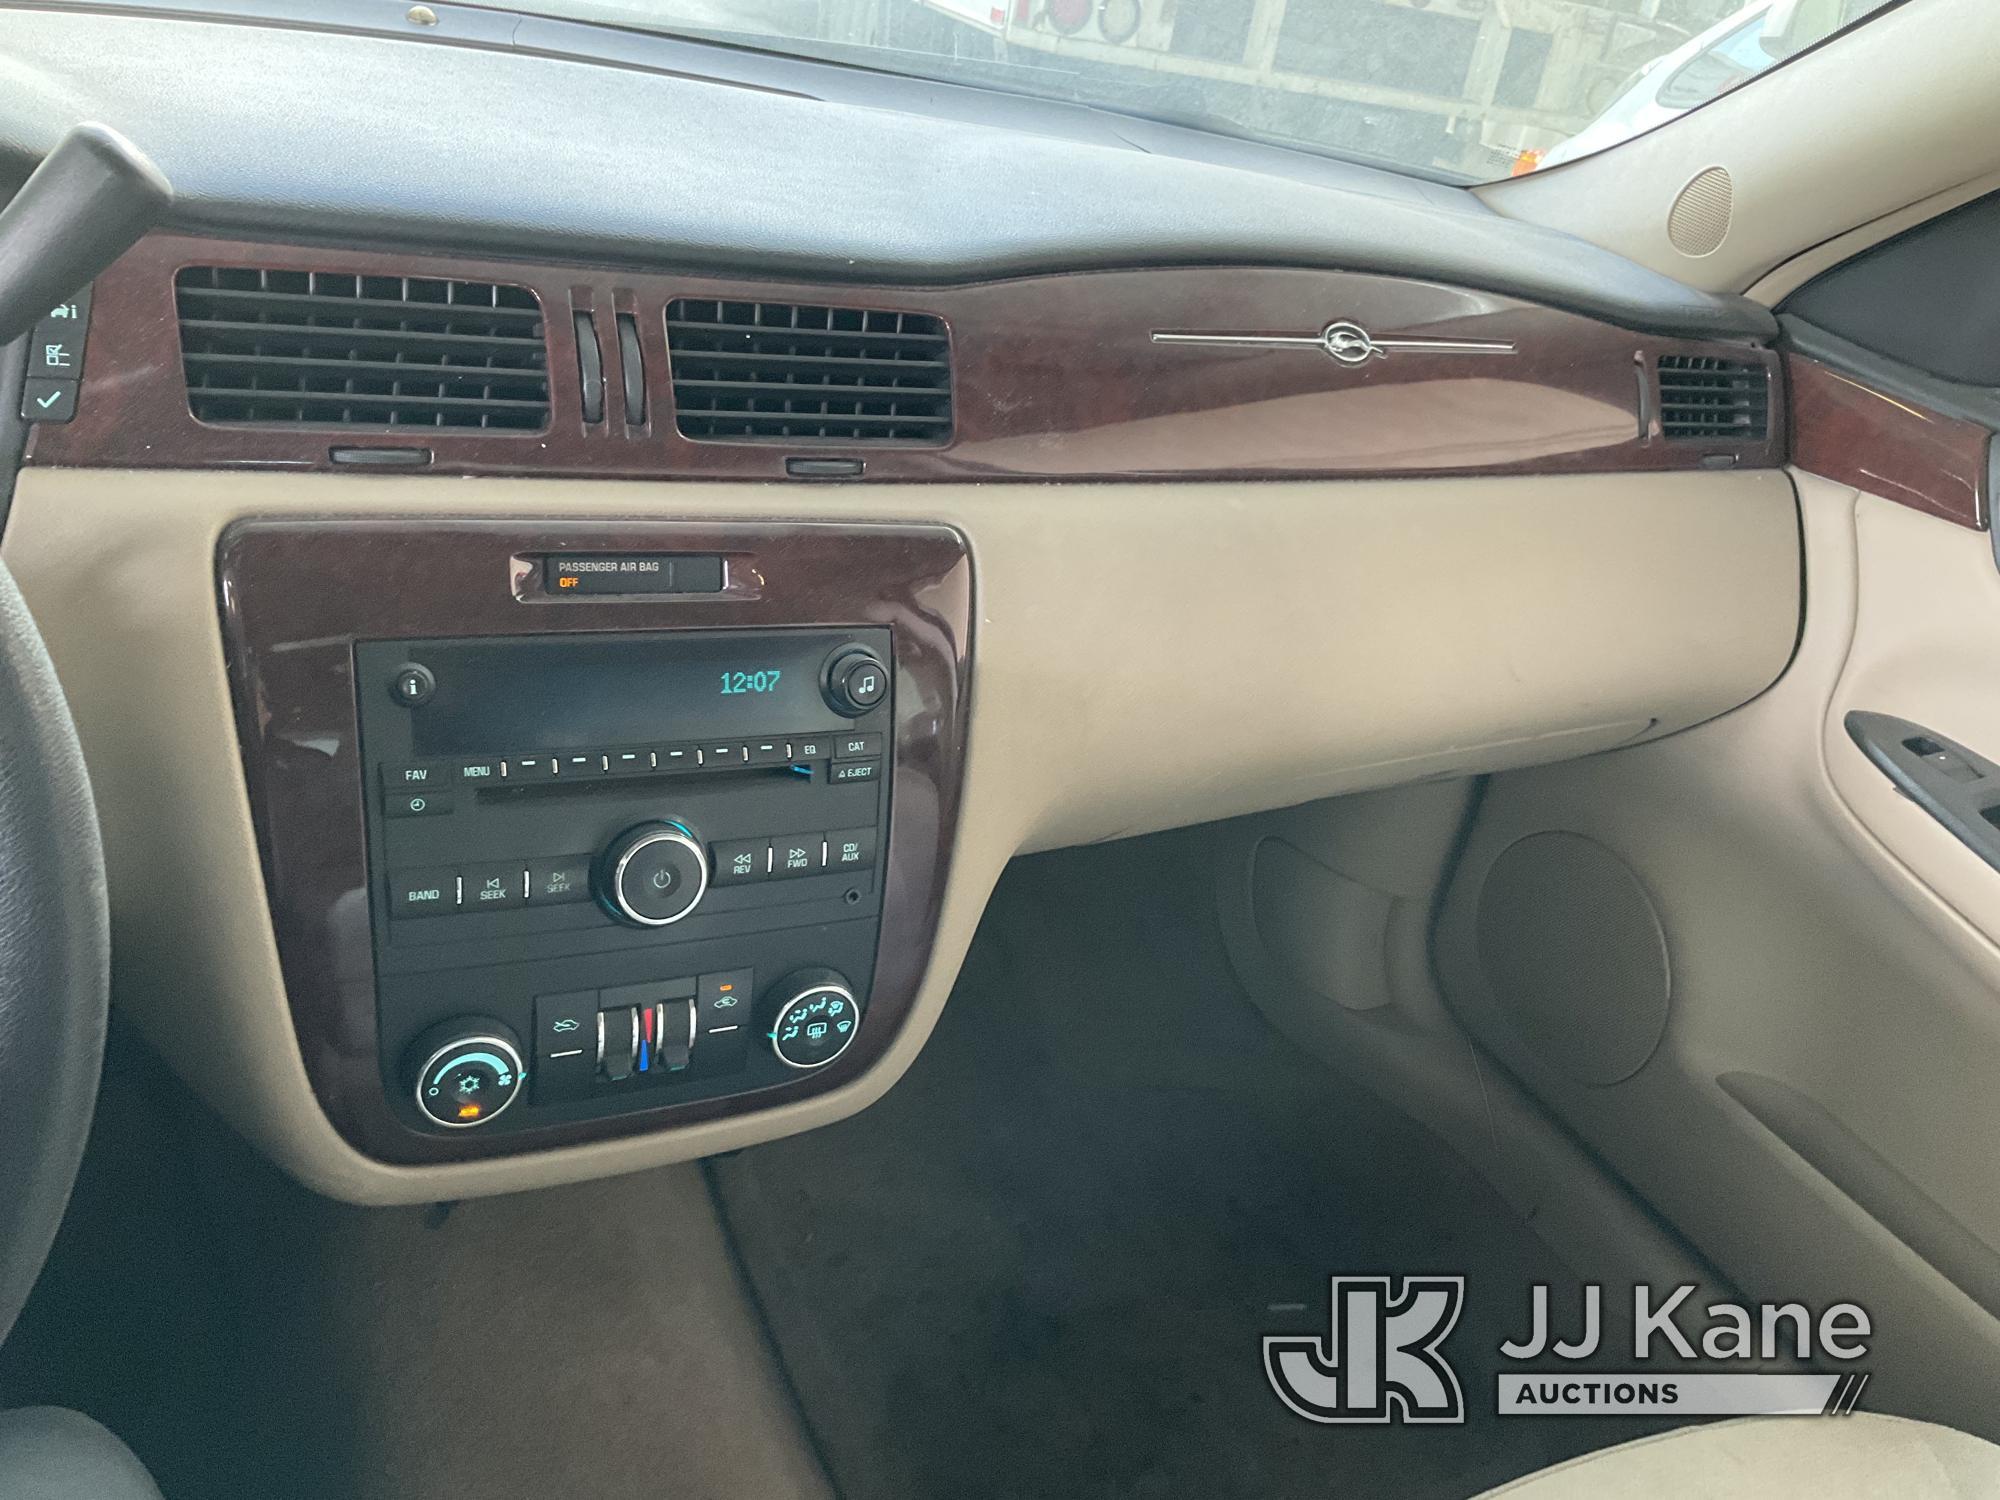 (Jurupa Valley, CA) 2009 Chevrolet Impala 4-Door Sedan Runs & Moves, Air Bag Light On